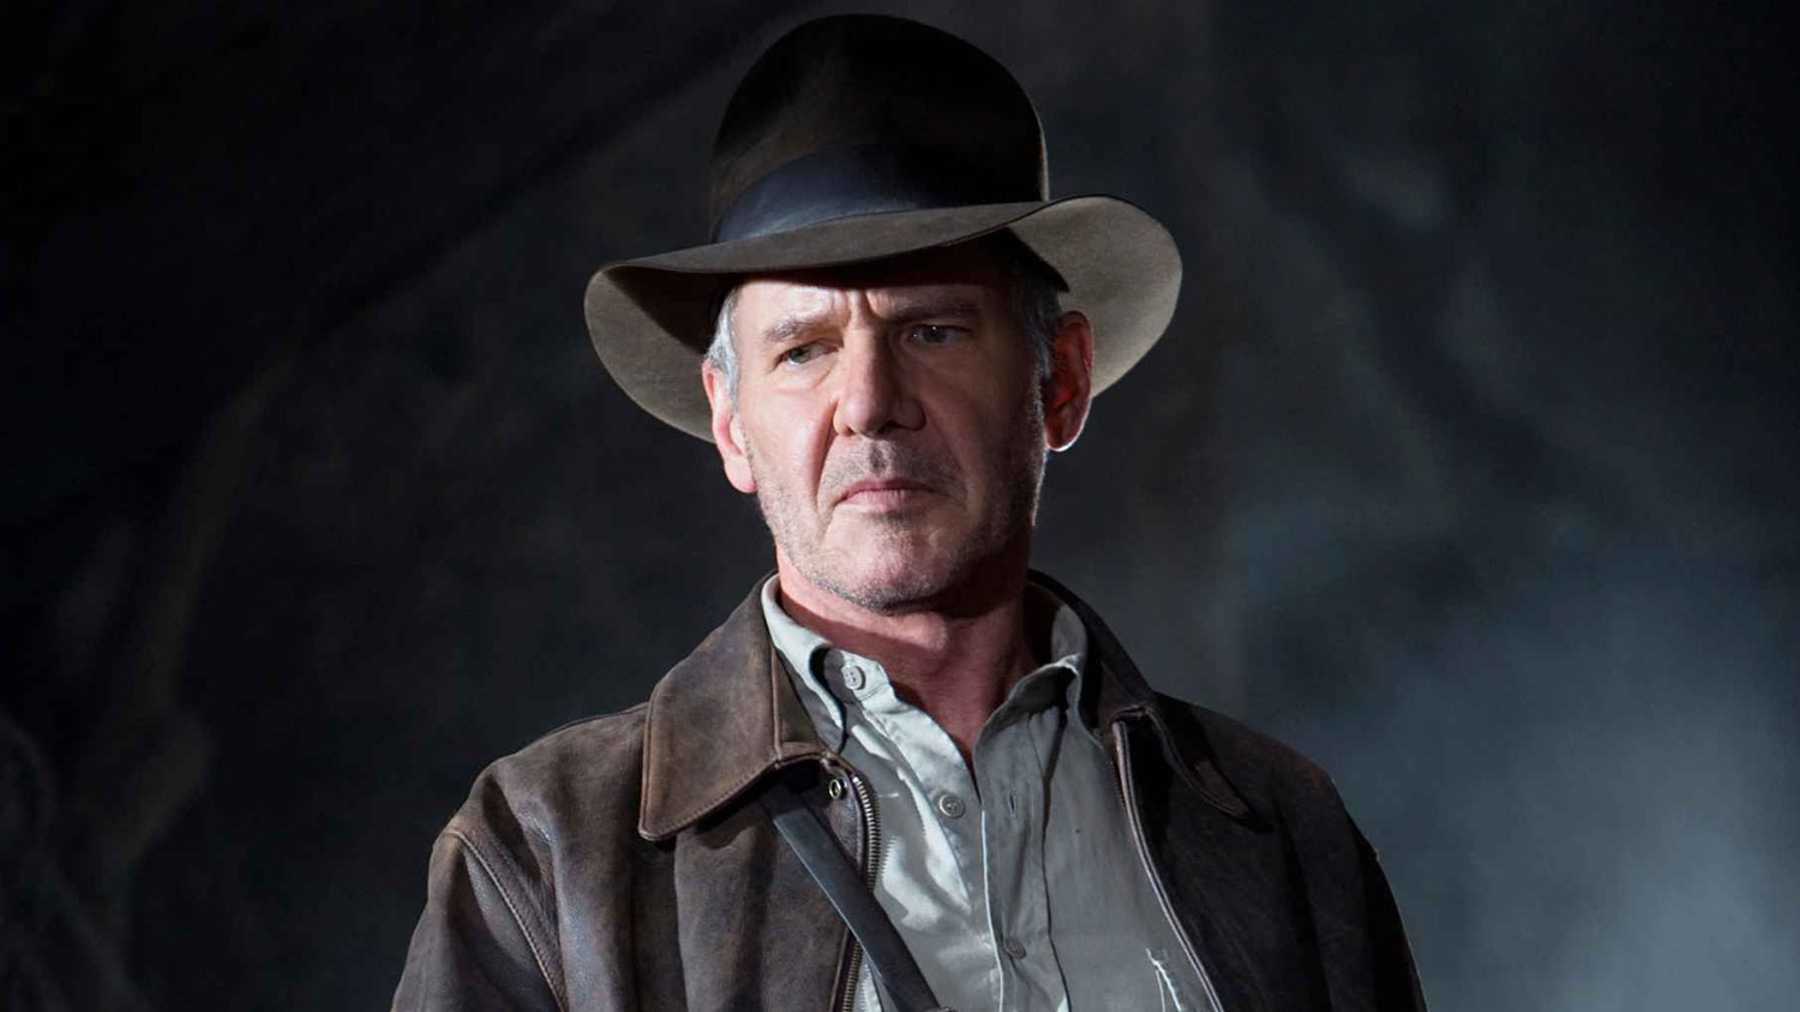 Kiderült, mikor várható az Indiana Jones ötödik részének hivatalos előzetese